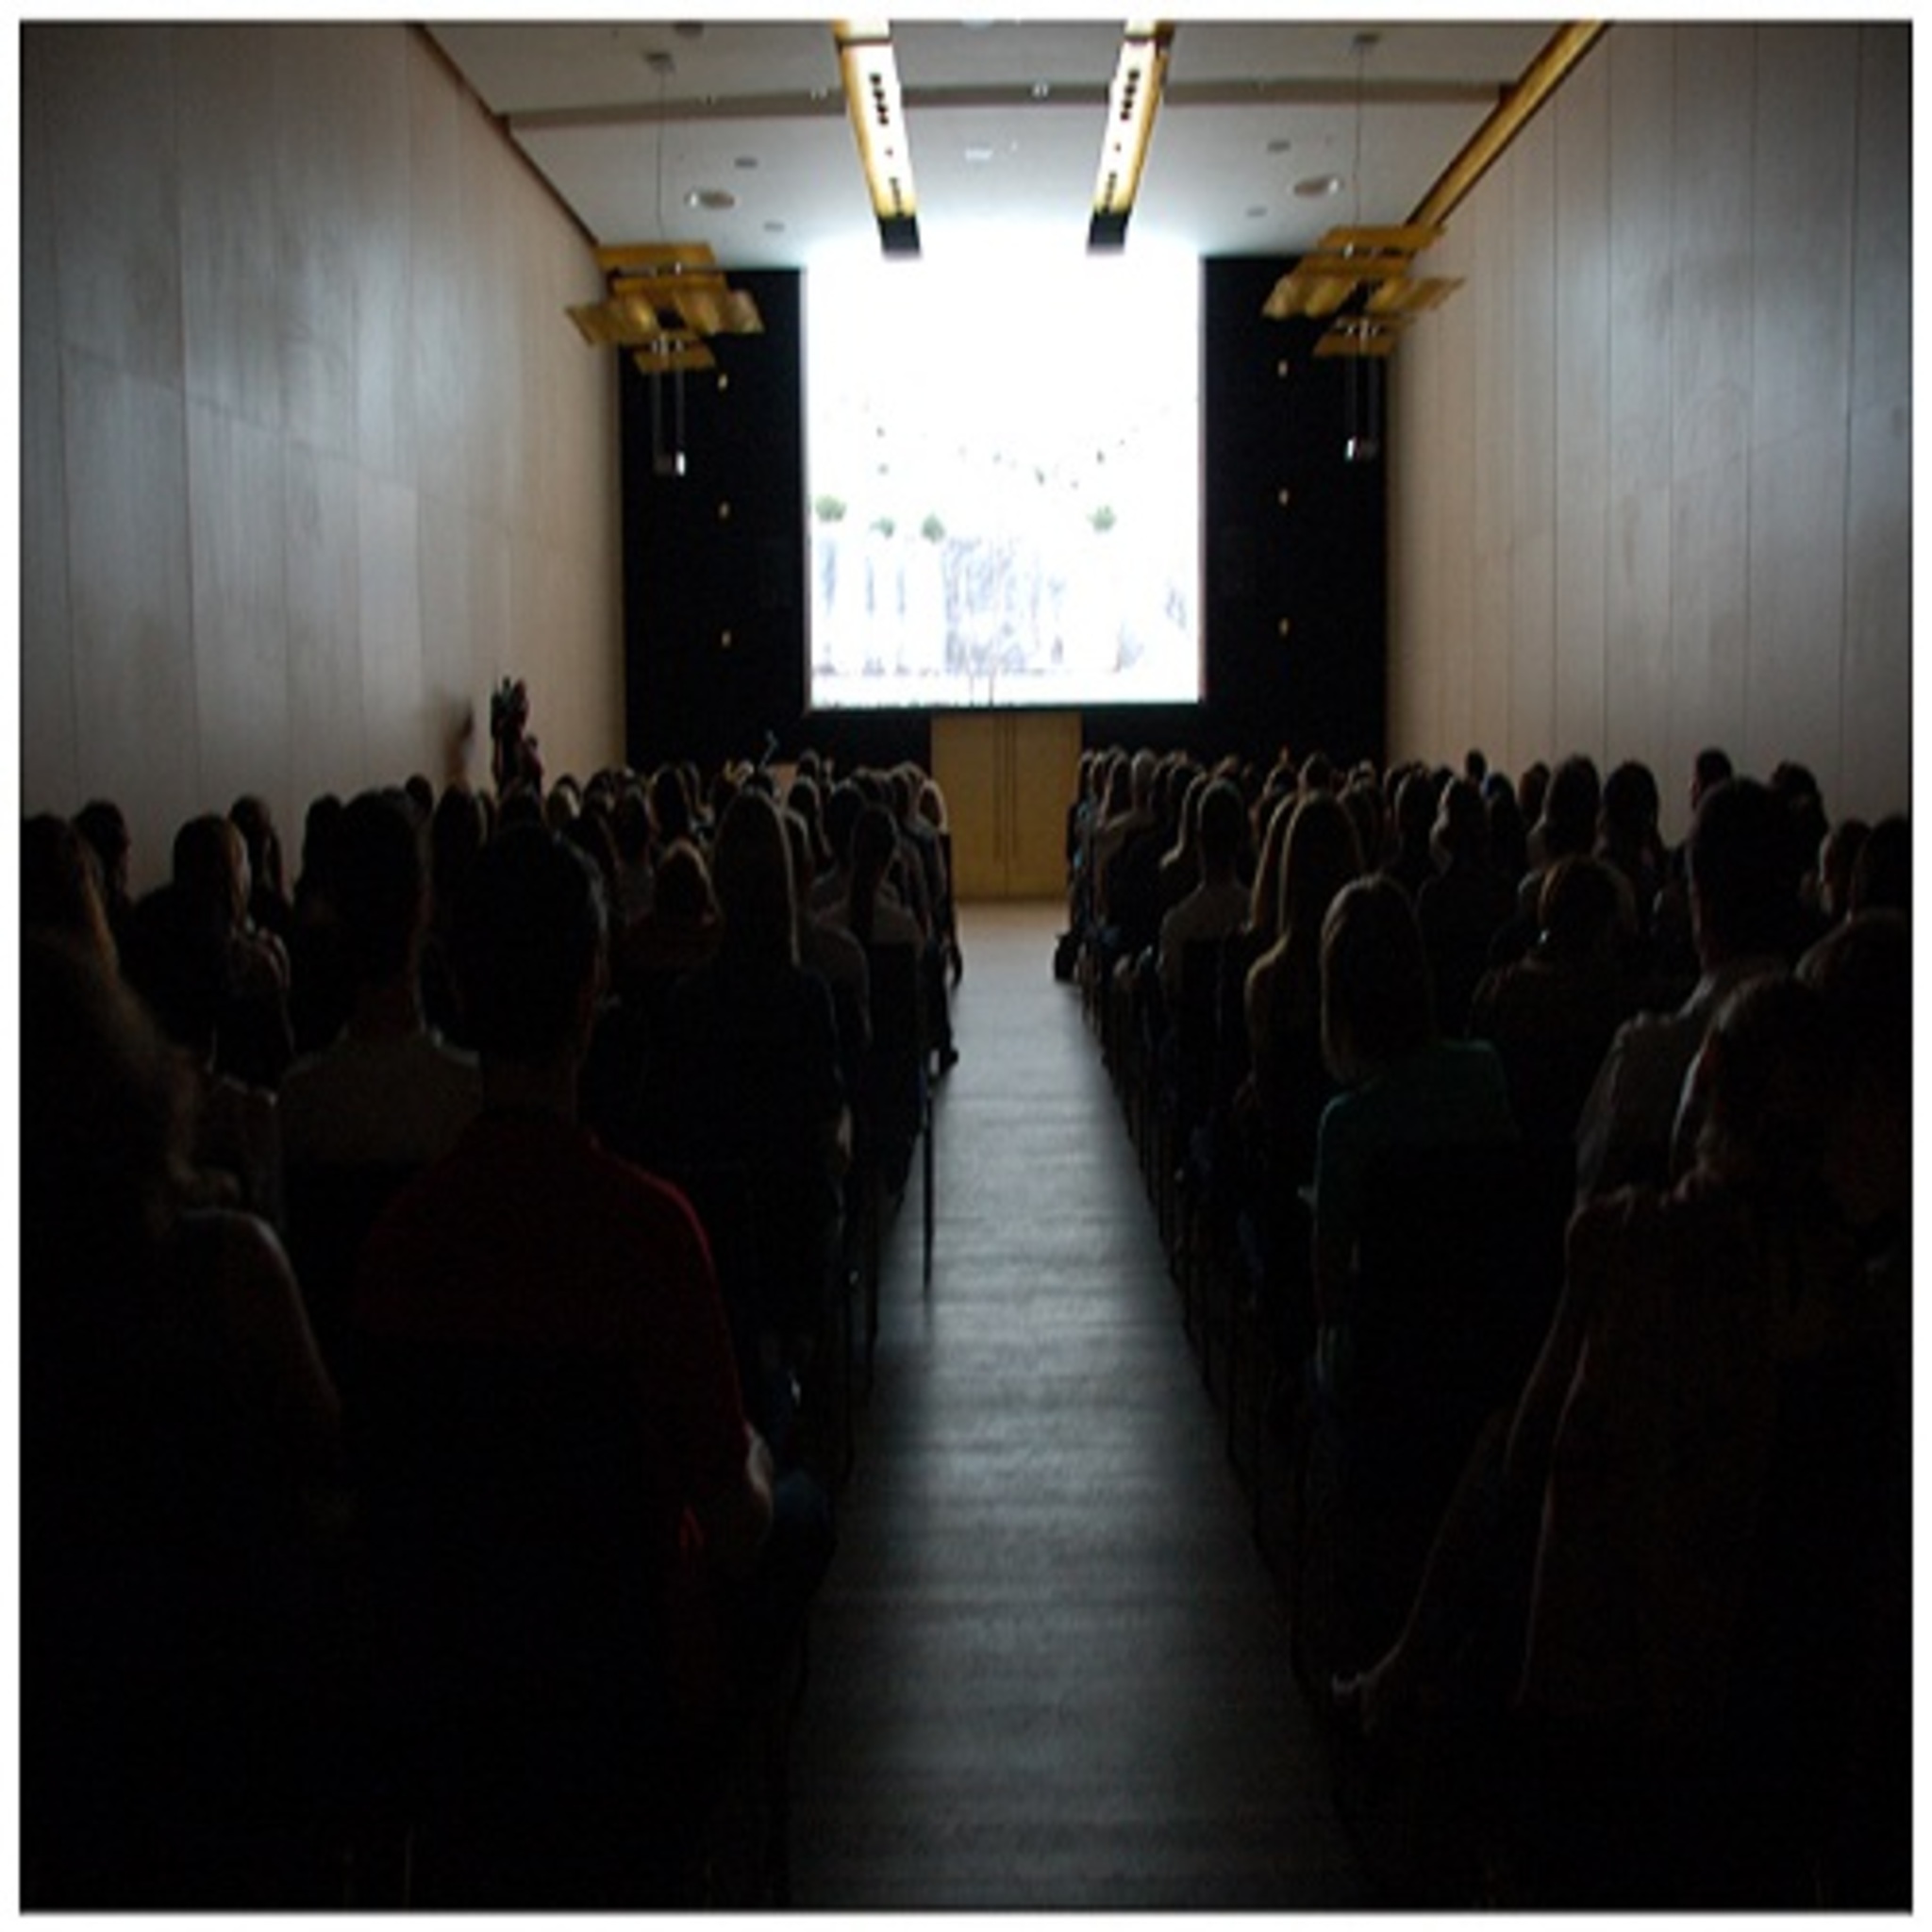 The program of screenings 3rd Ural Industrial Biennale of Contemporary Art